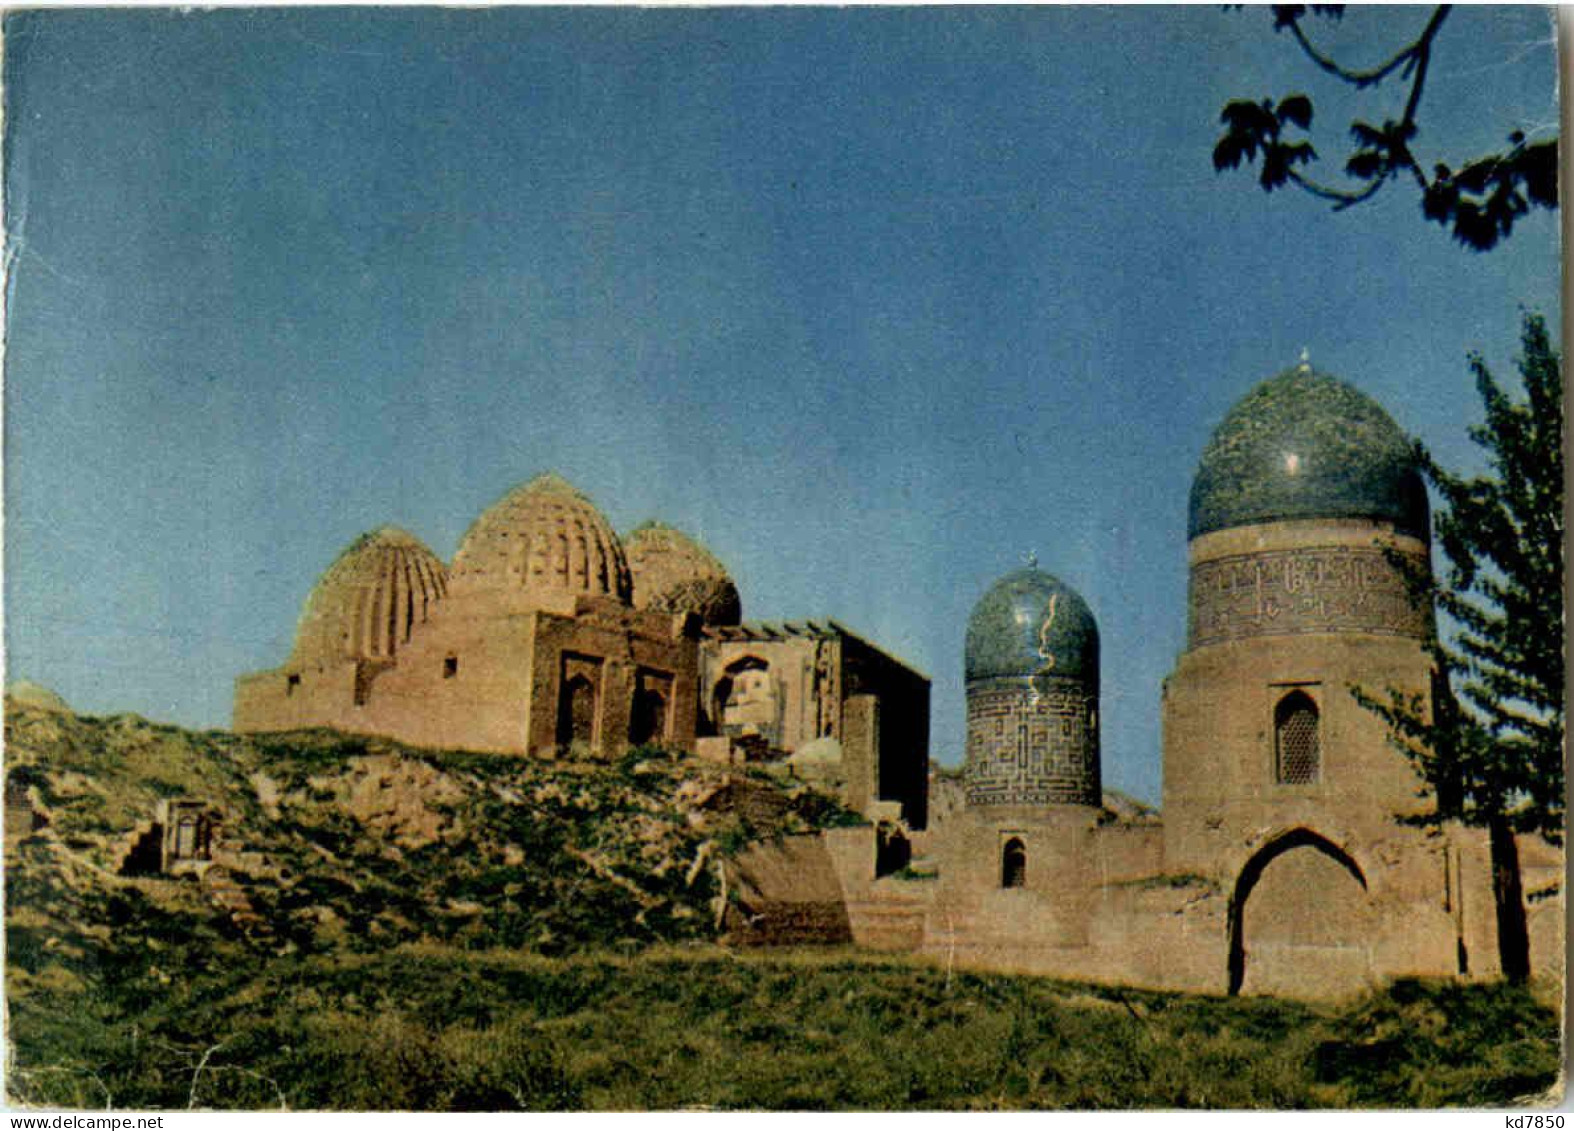 Samerqand - Uzbekistan